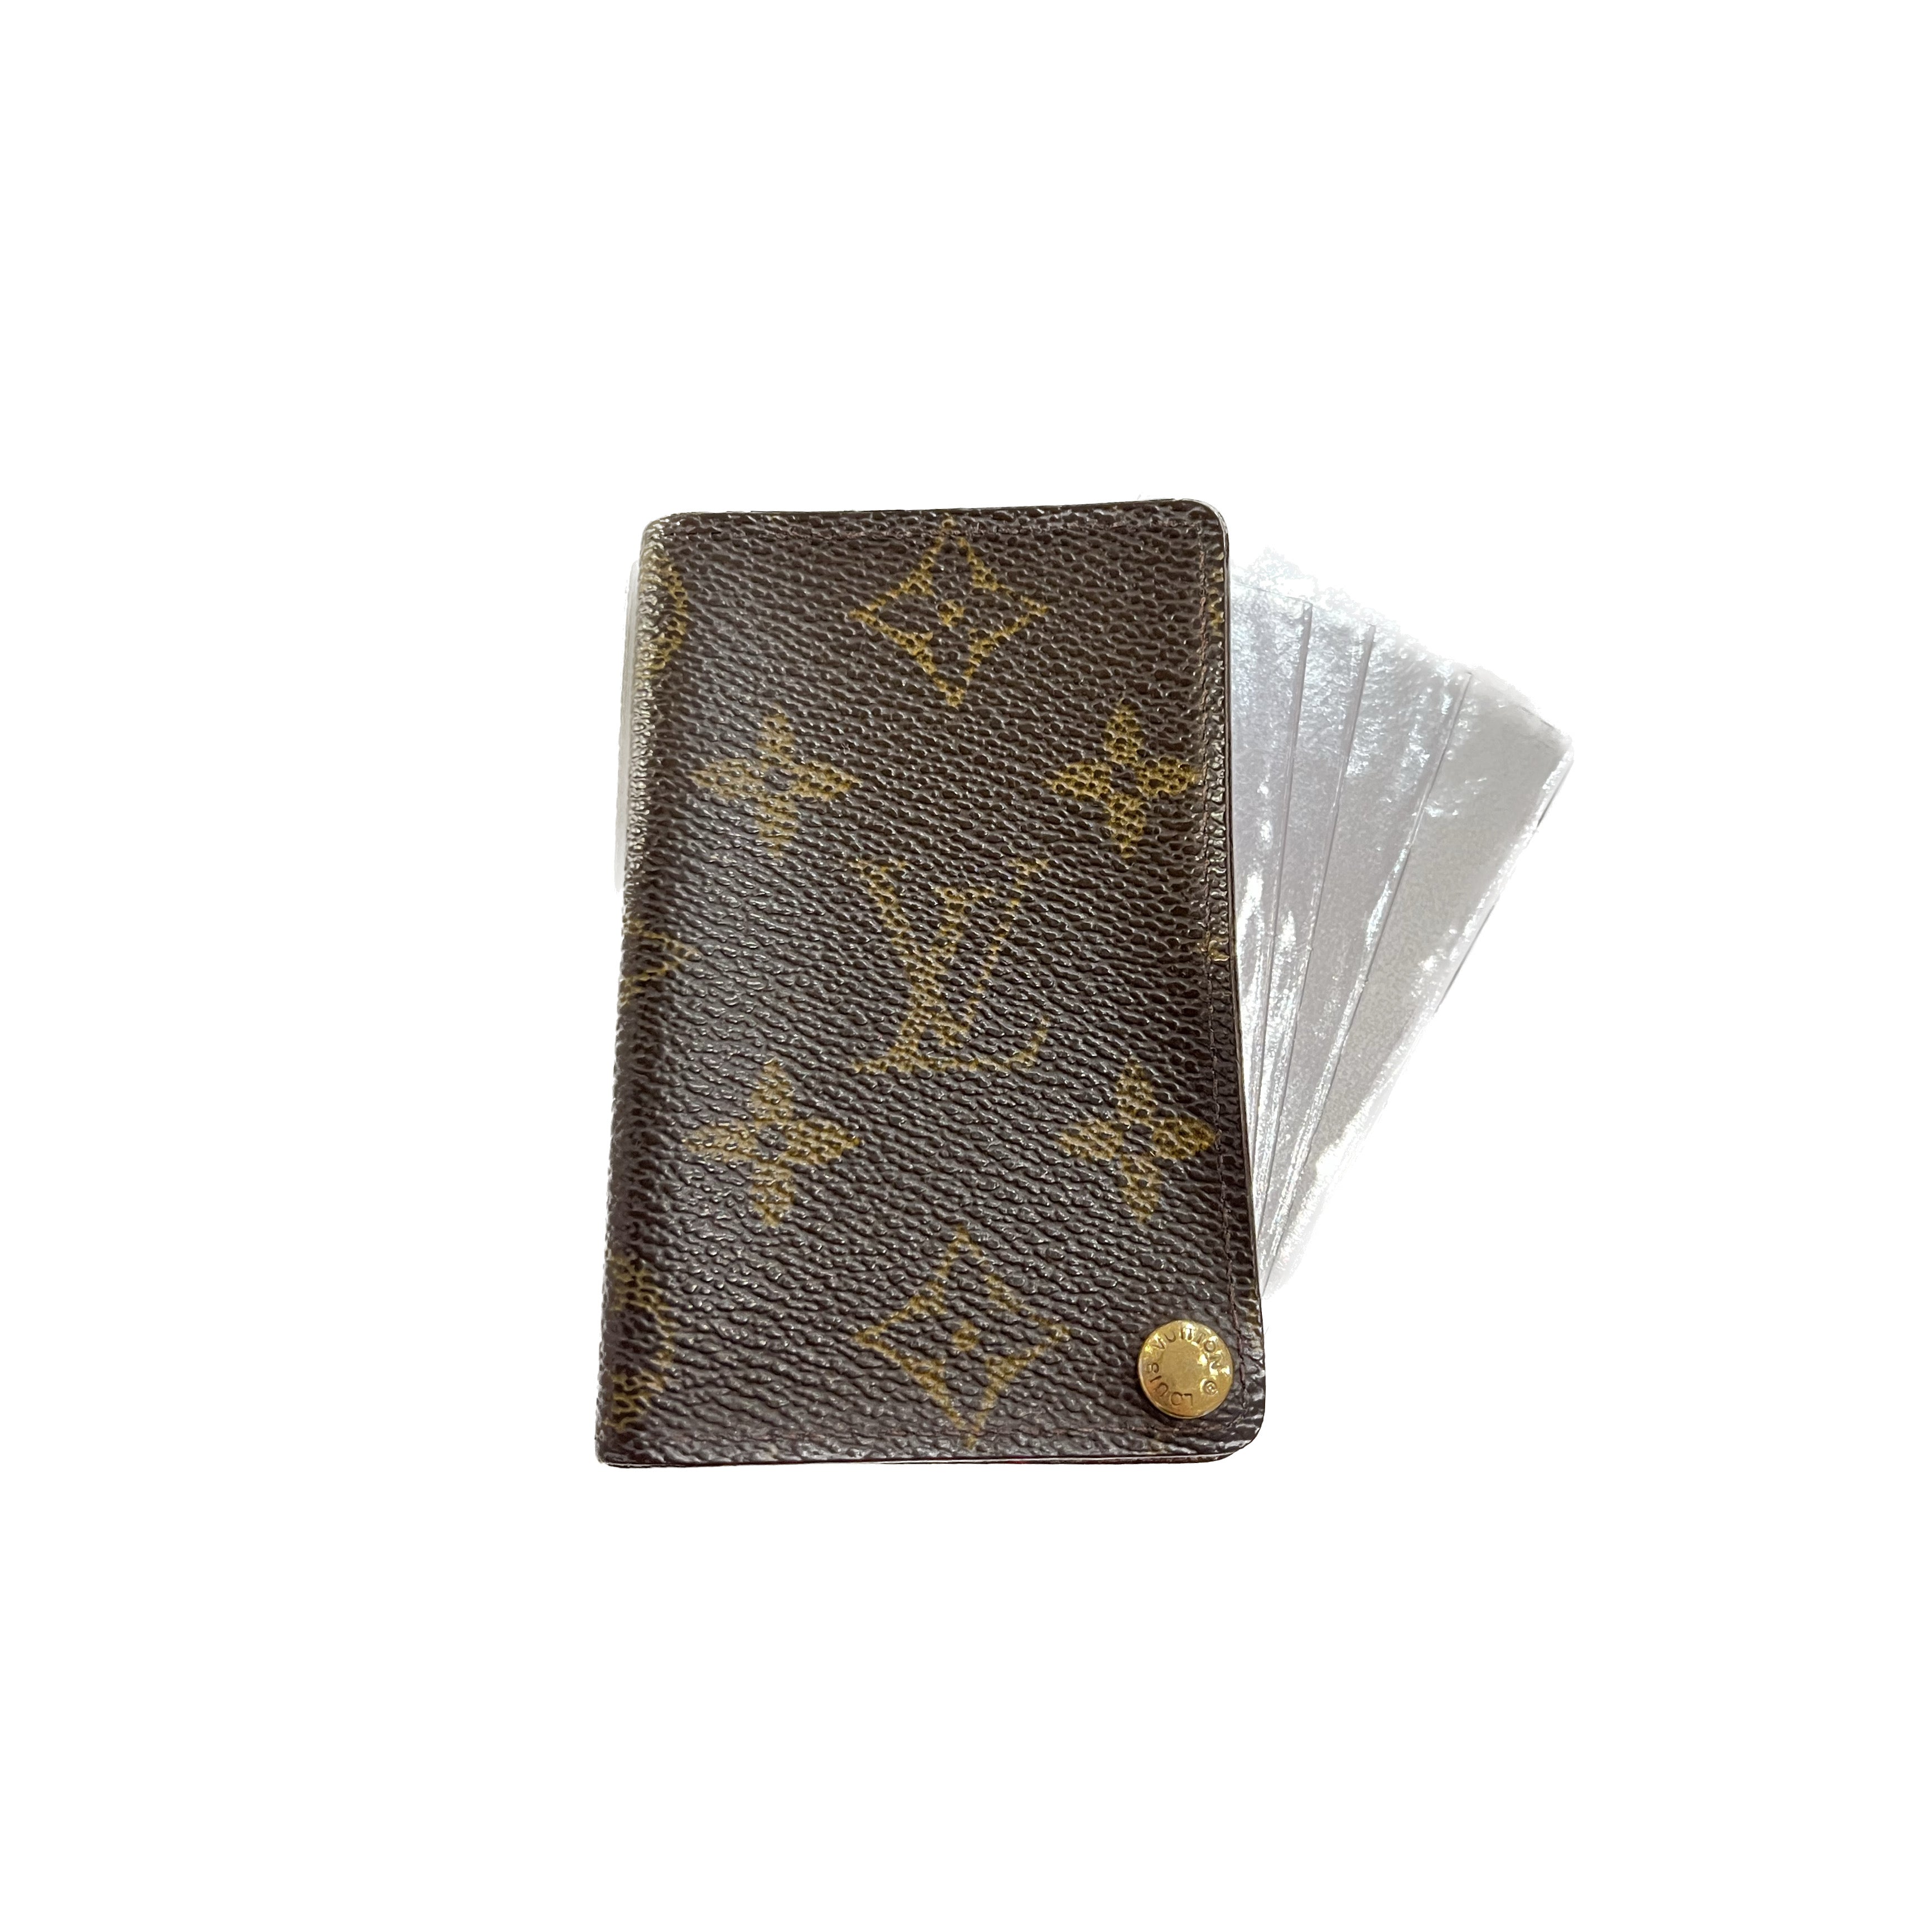 Porta tessere Louis Vuitton - Abbigliamento e Accessori In vendita